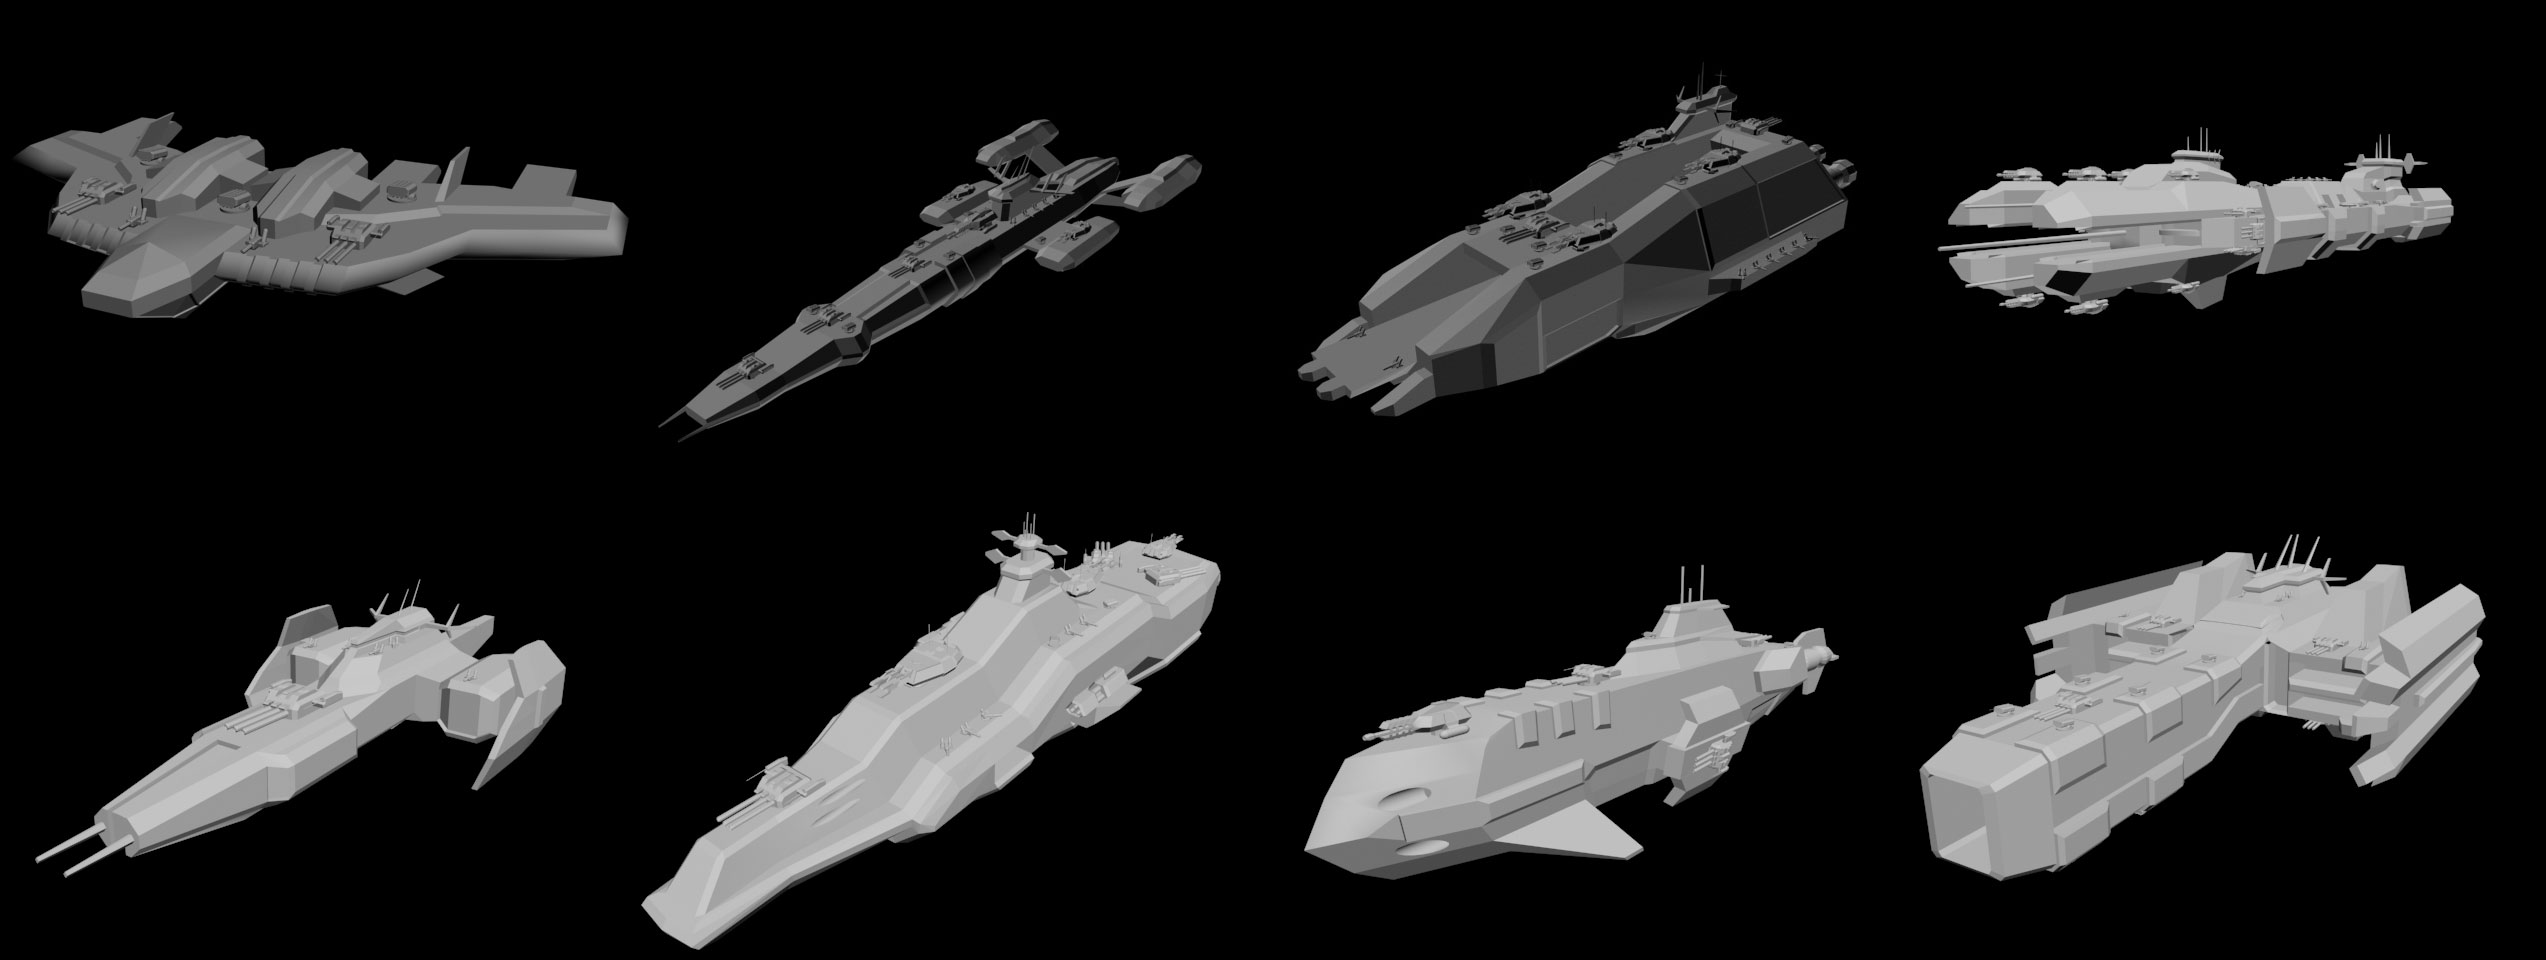 star wars empire at war models